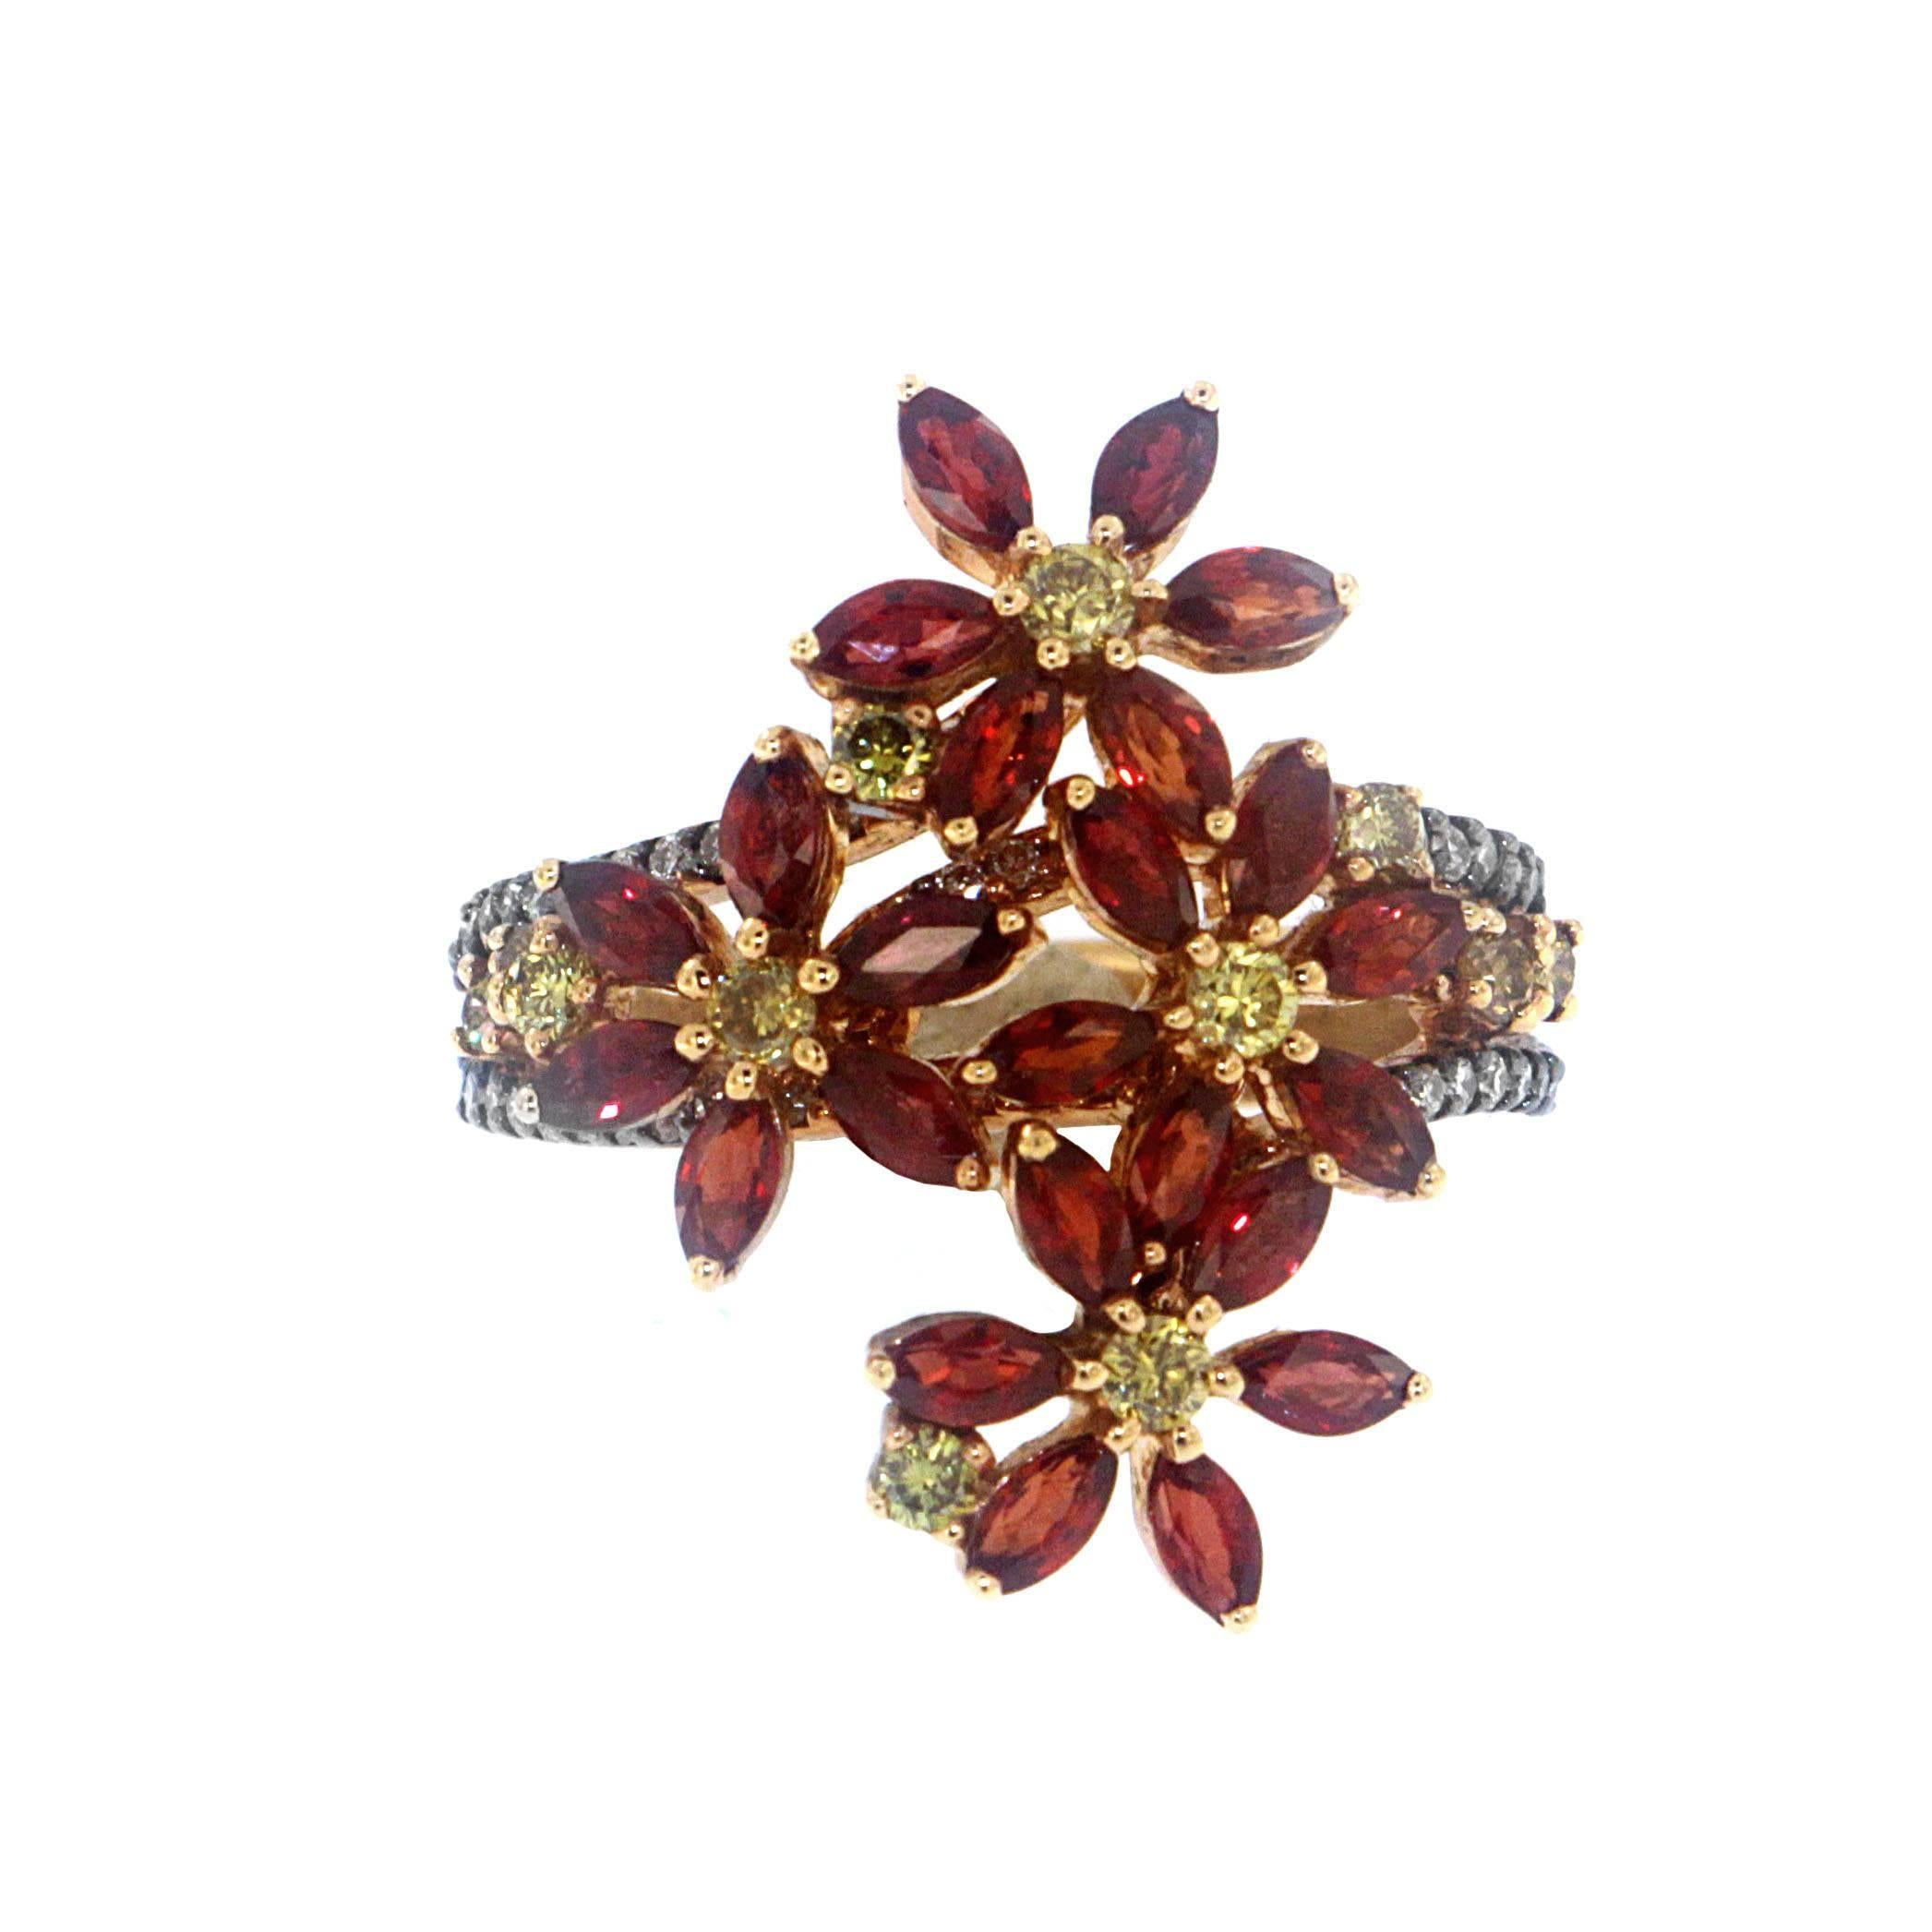 Der Ring Rebasco, eine Kreation von Zorab, ist von der Chrysantheme Rebasco inspiriert und schmiegt sich so schön an Ihren Finger wie die Blumen an den Weinstock.

2.95 Karat Fancy-Saphire verflechten sich mit 0,47 Karat gelben Diamanten und 0,38